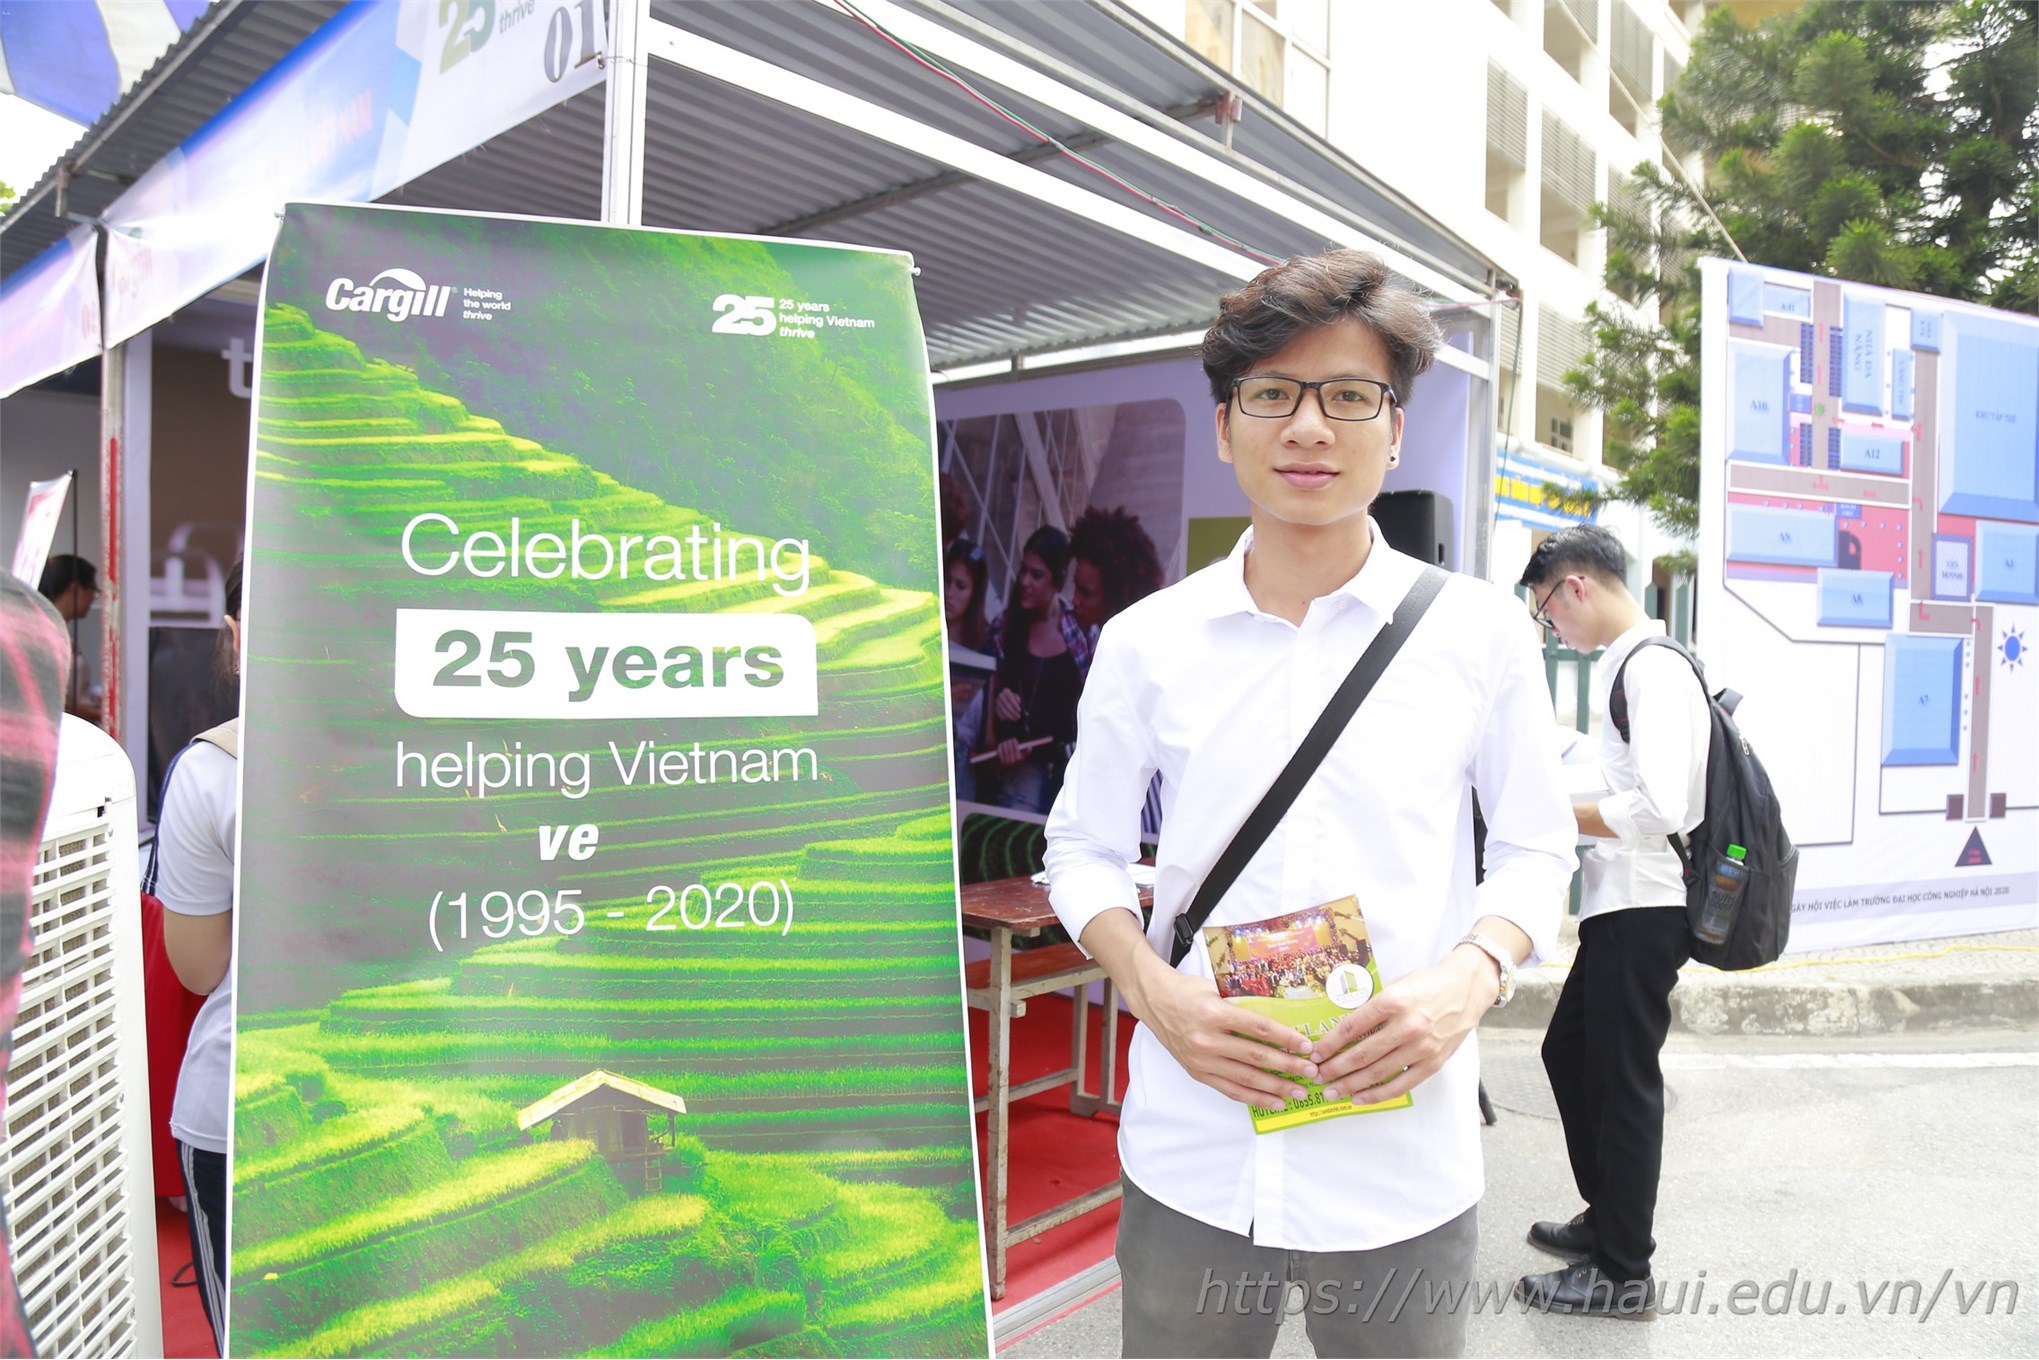 Bạn Hoàng Khánh Hòa – sinh viên năm 4, Khoa Điện trường Đại học Công nghiệp Hà Nội tham dự Ngày hội việc làm năm 2020